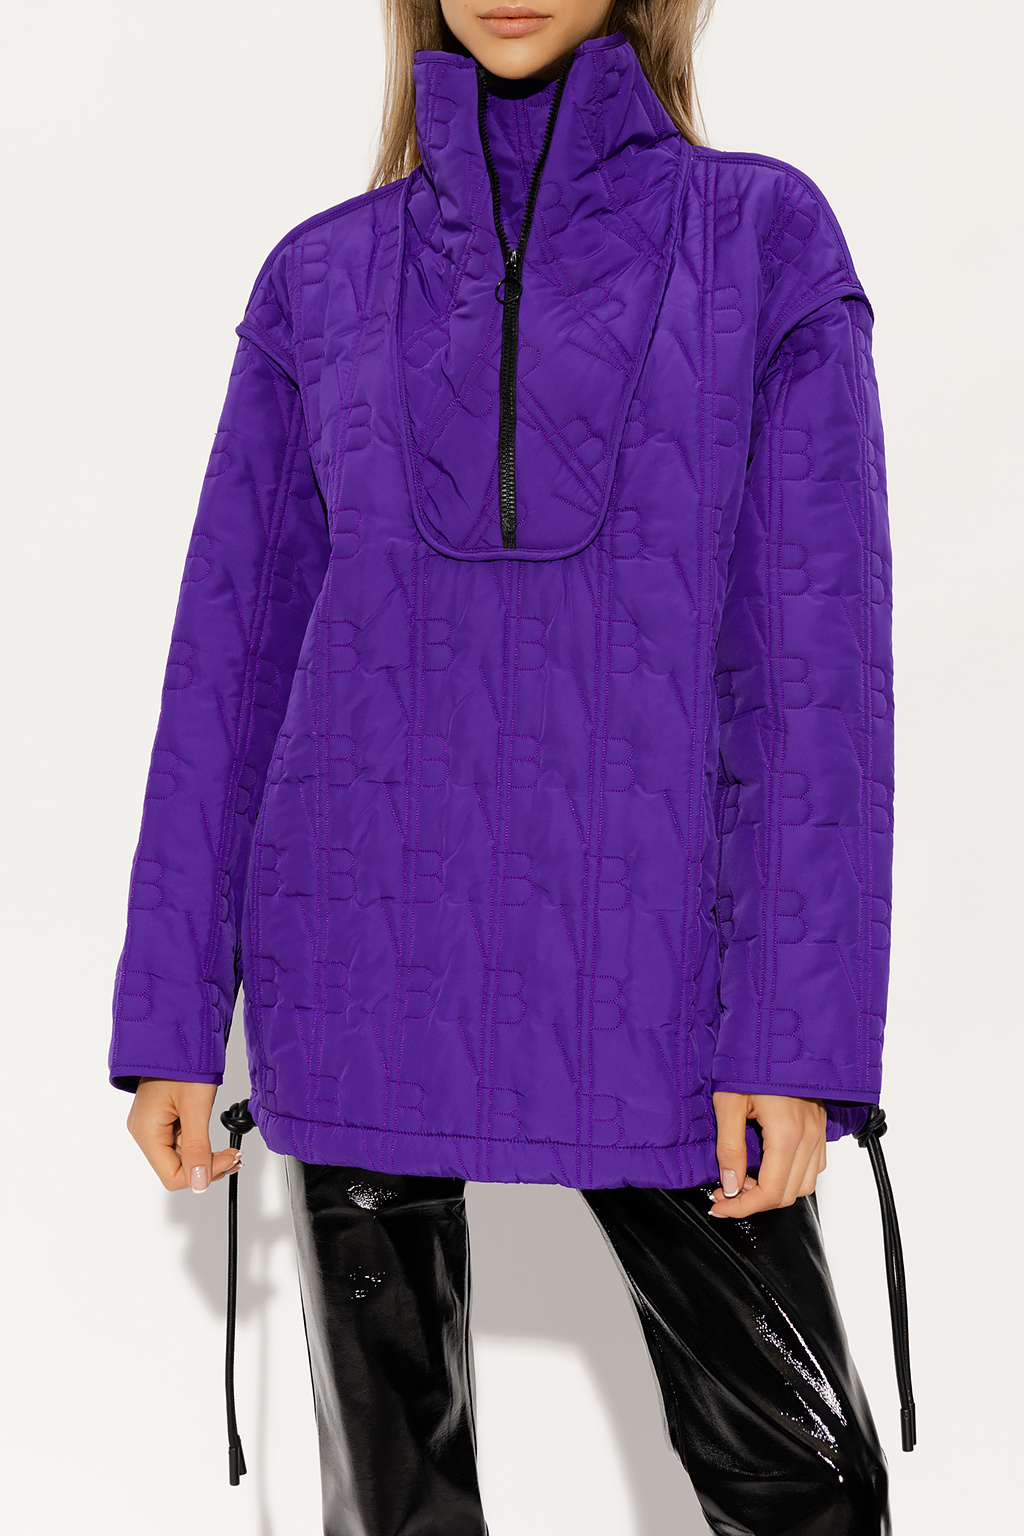 Victoria Beckham Monogrammed pair jacket